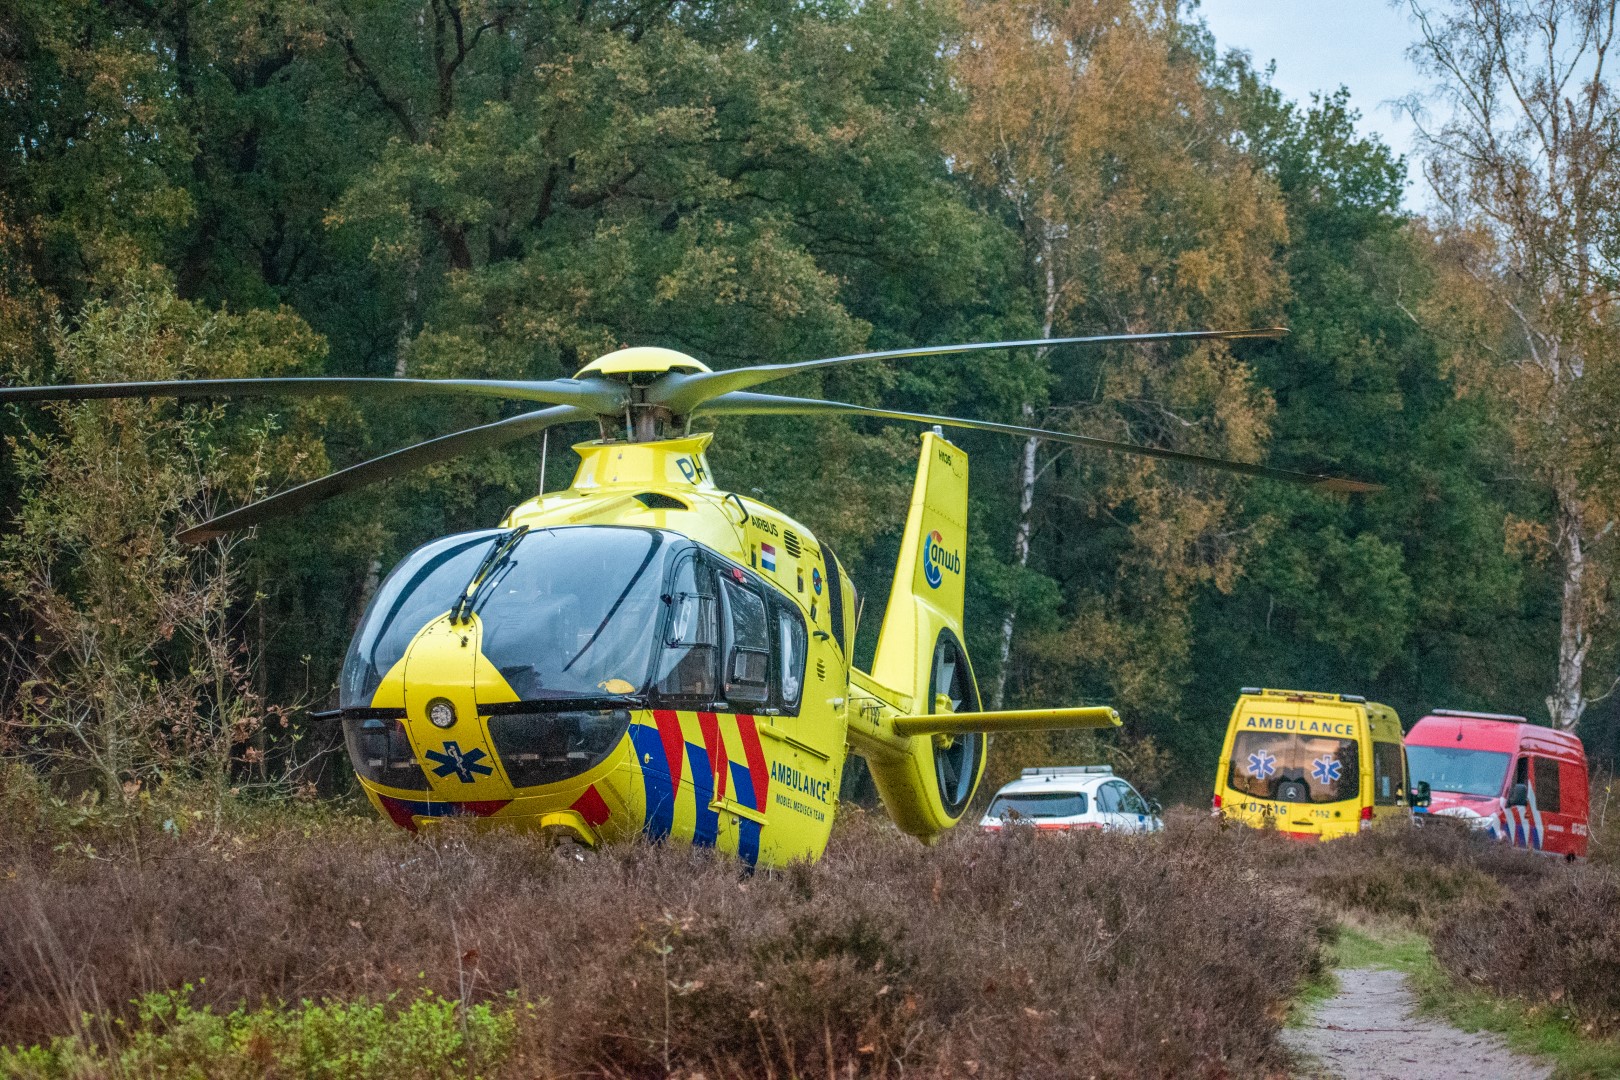 Wandelaar gewond na val op heide: traumahelikopter geland